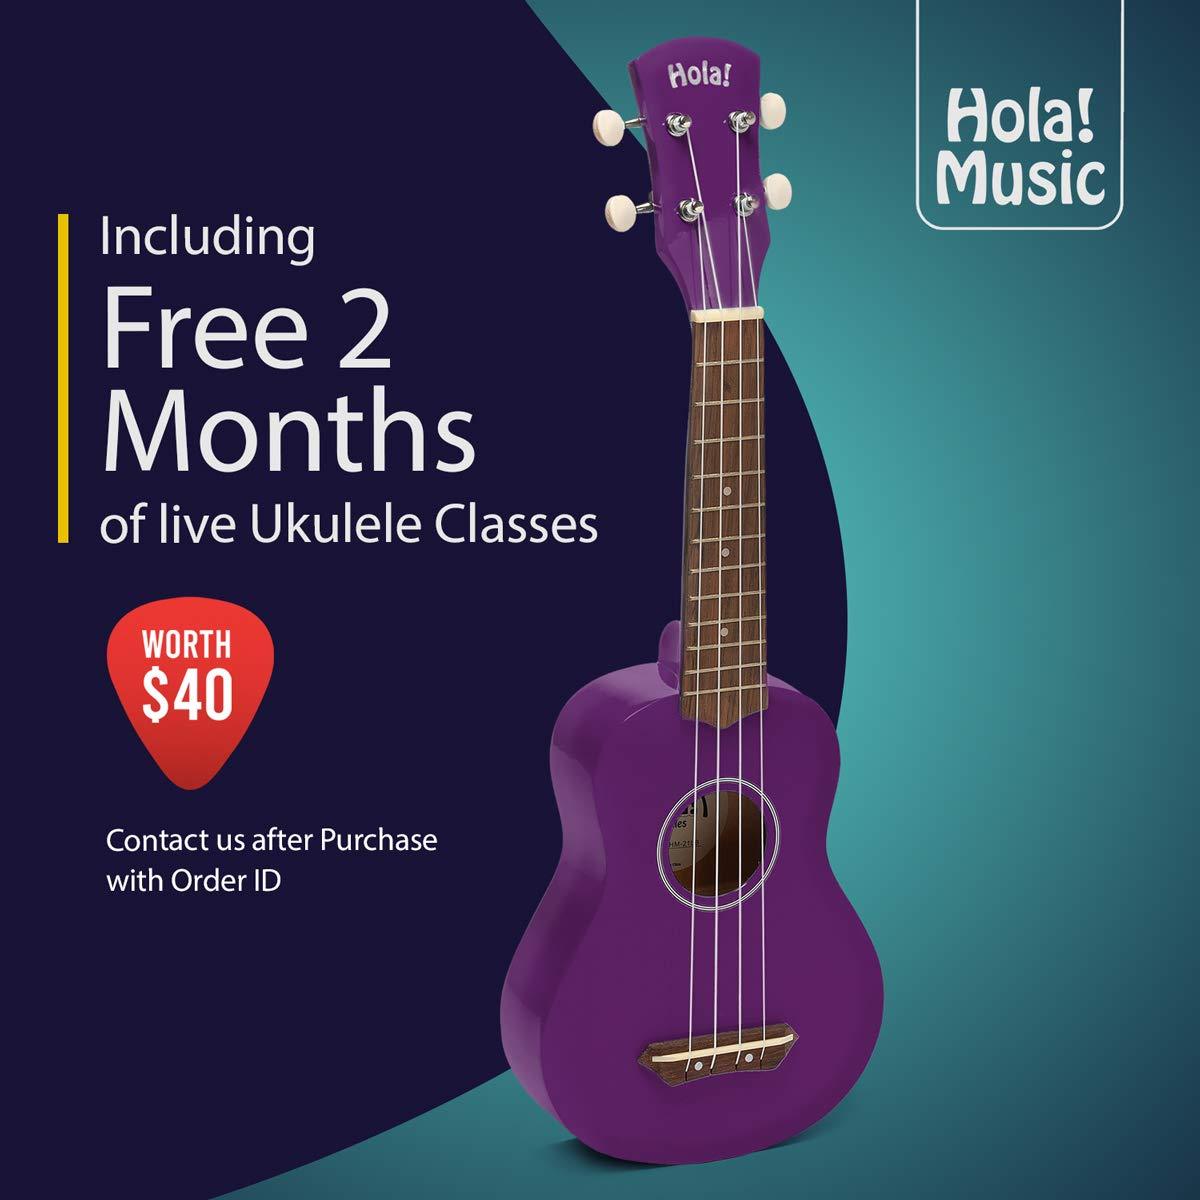 Hola! Music Ukuleles for Adults, Kids & Beginners - 21 Maple Soprano  Ukulele w/Bag & More - Purple 